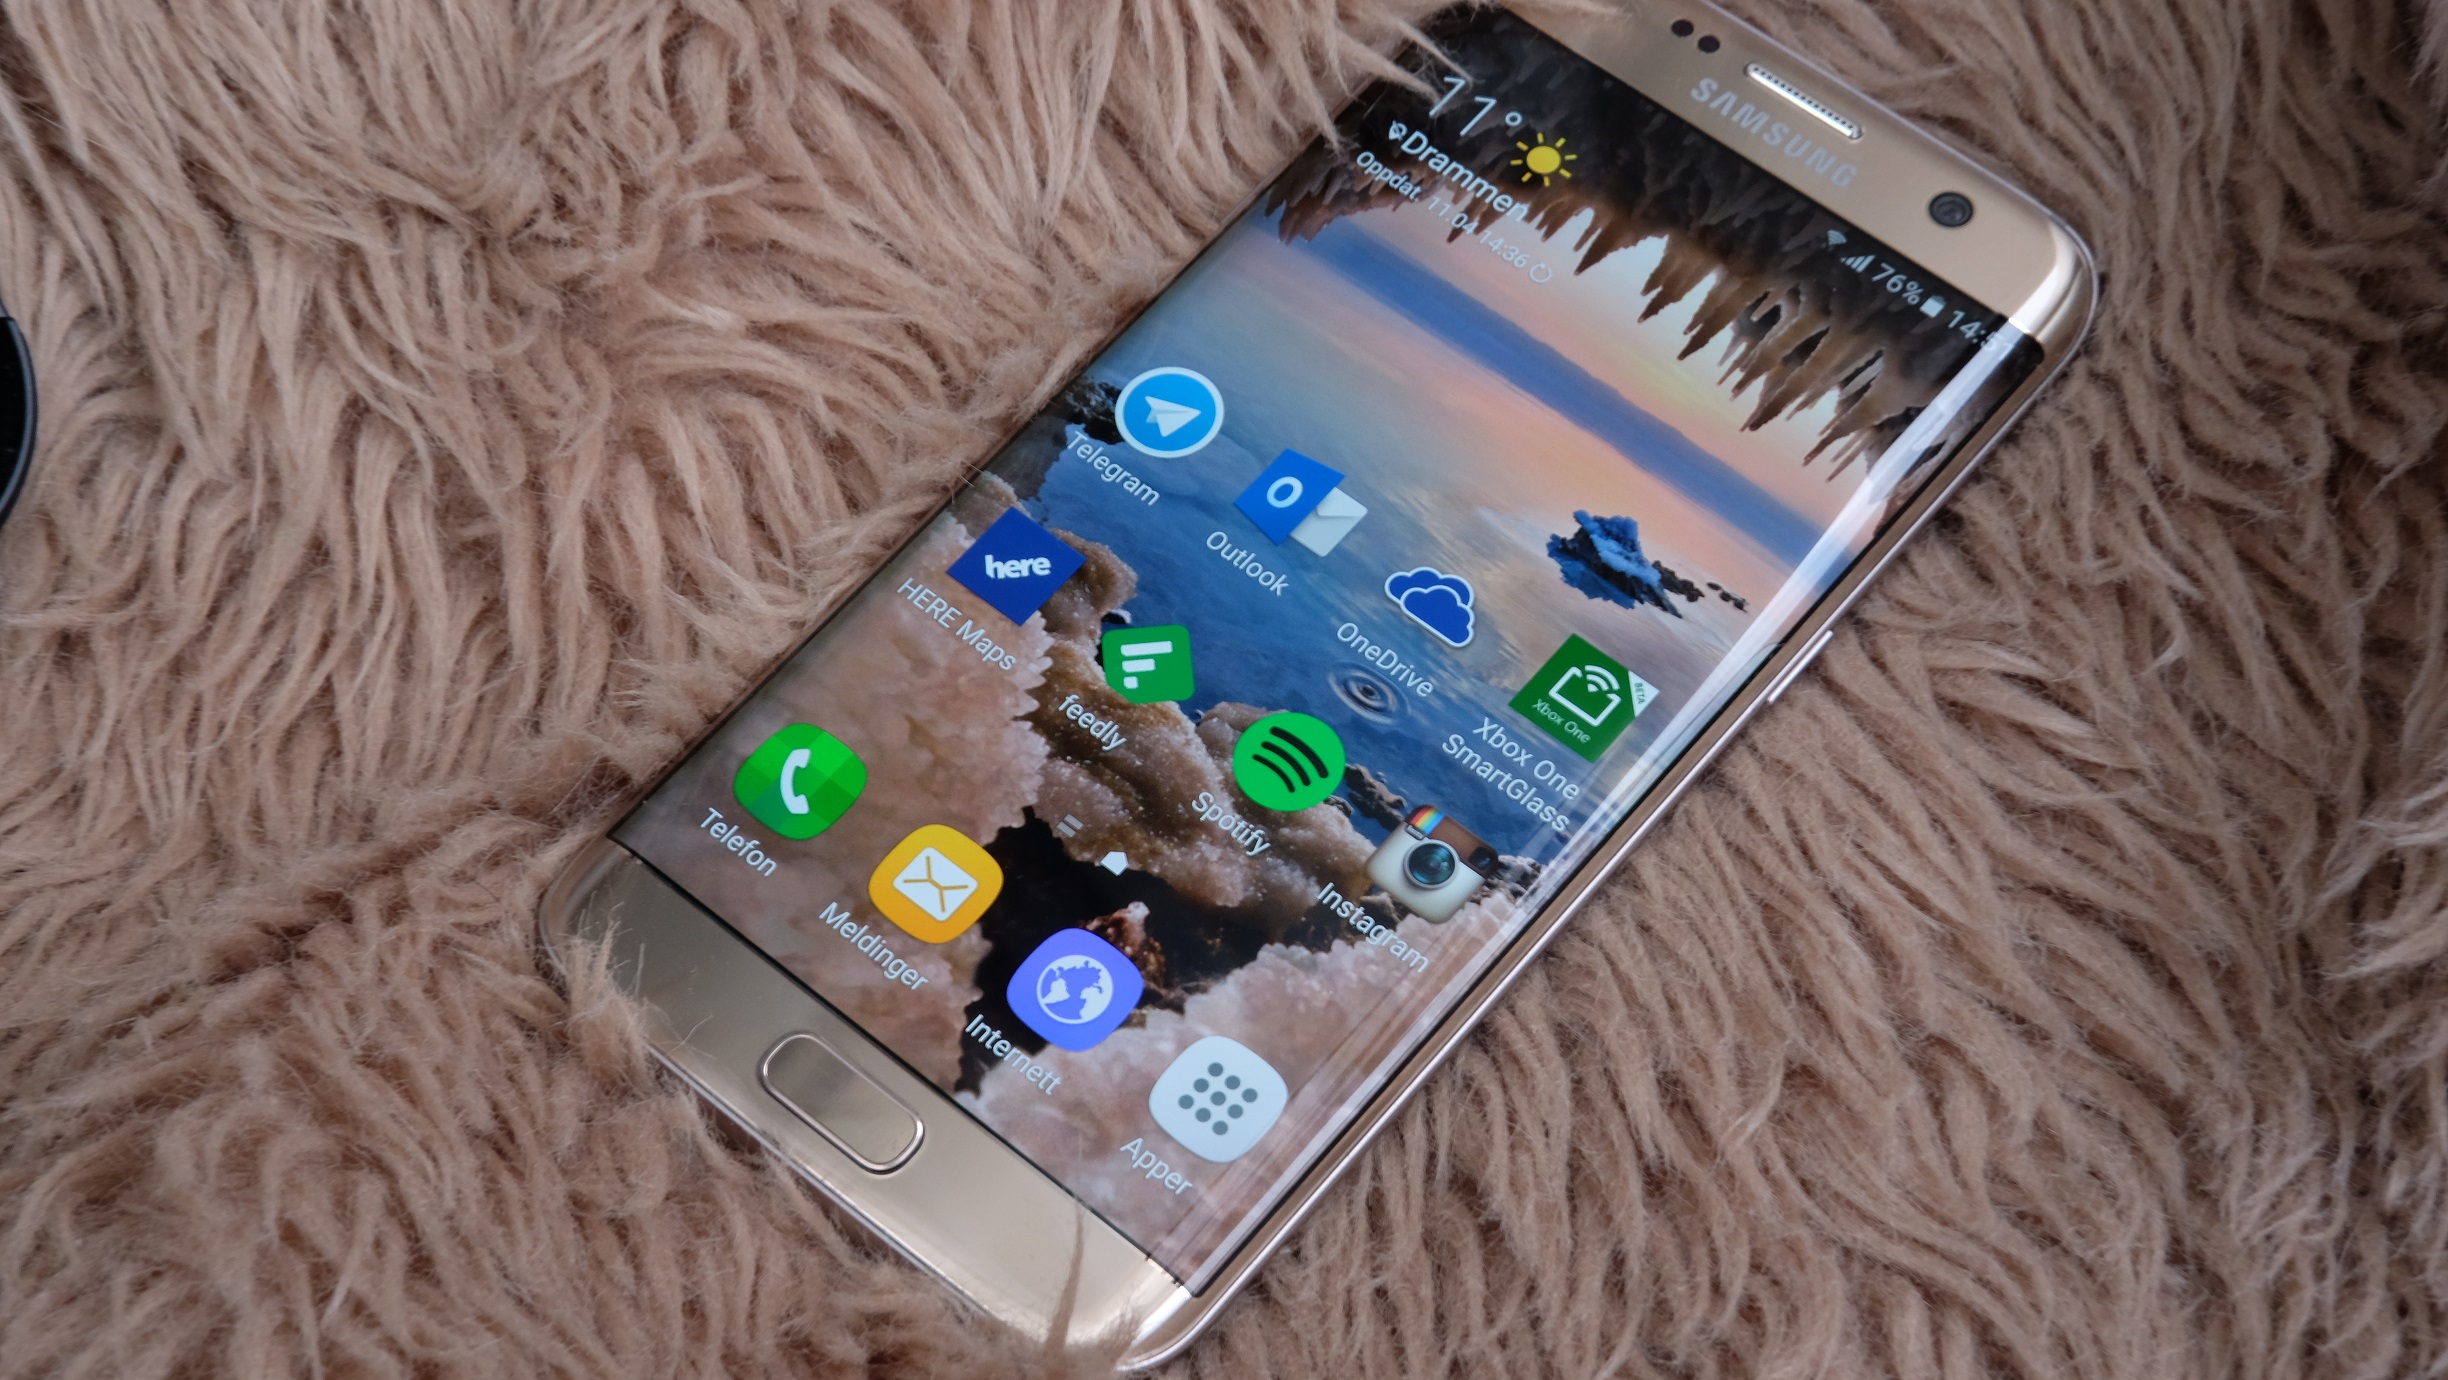 Android 7 for Galaxy S7 lar vente på seg, men snart kan ventetiden være over.